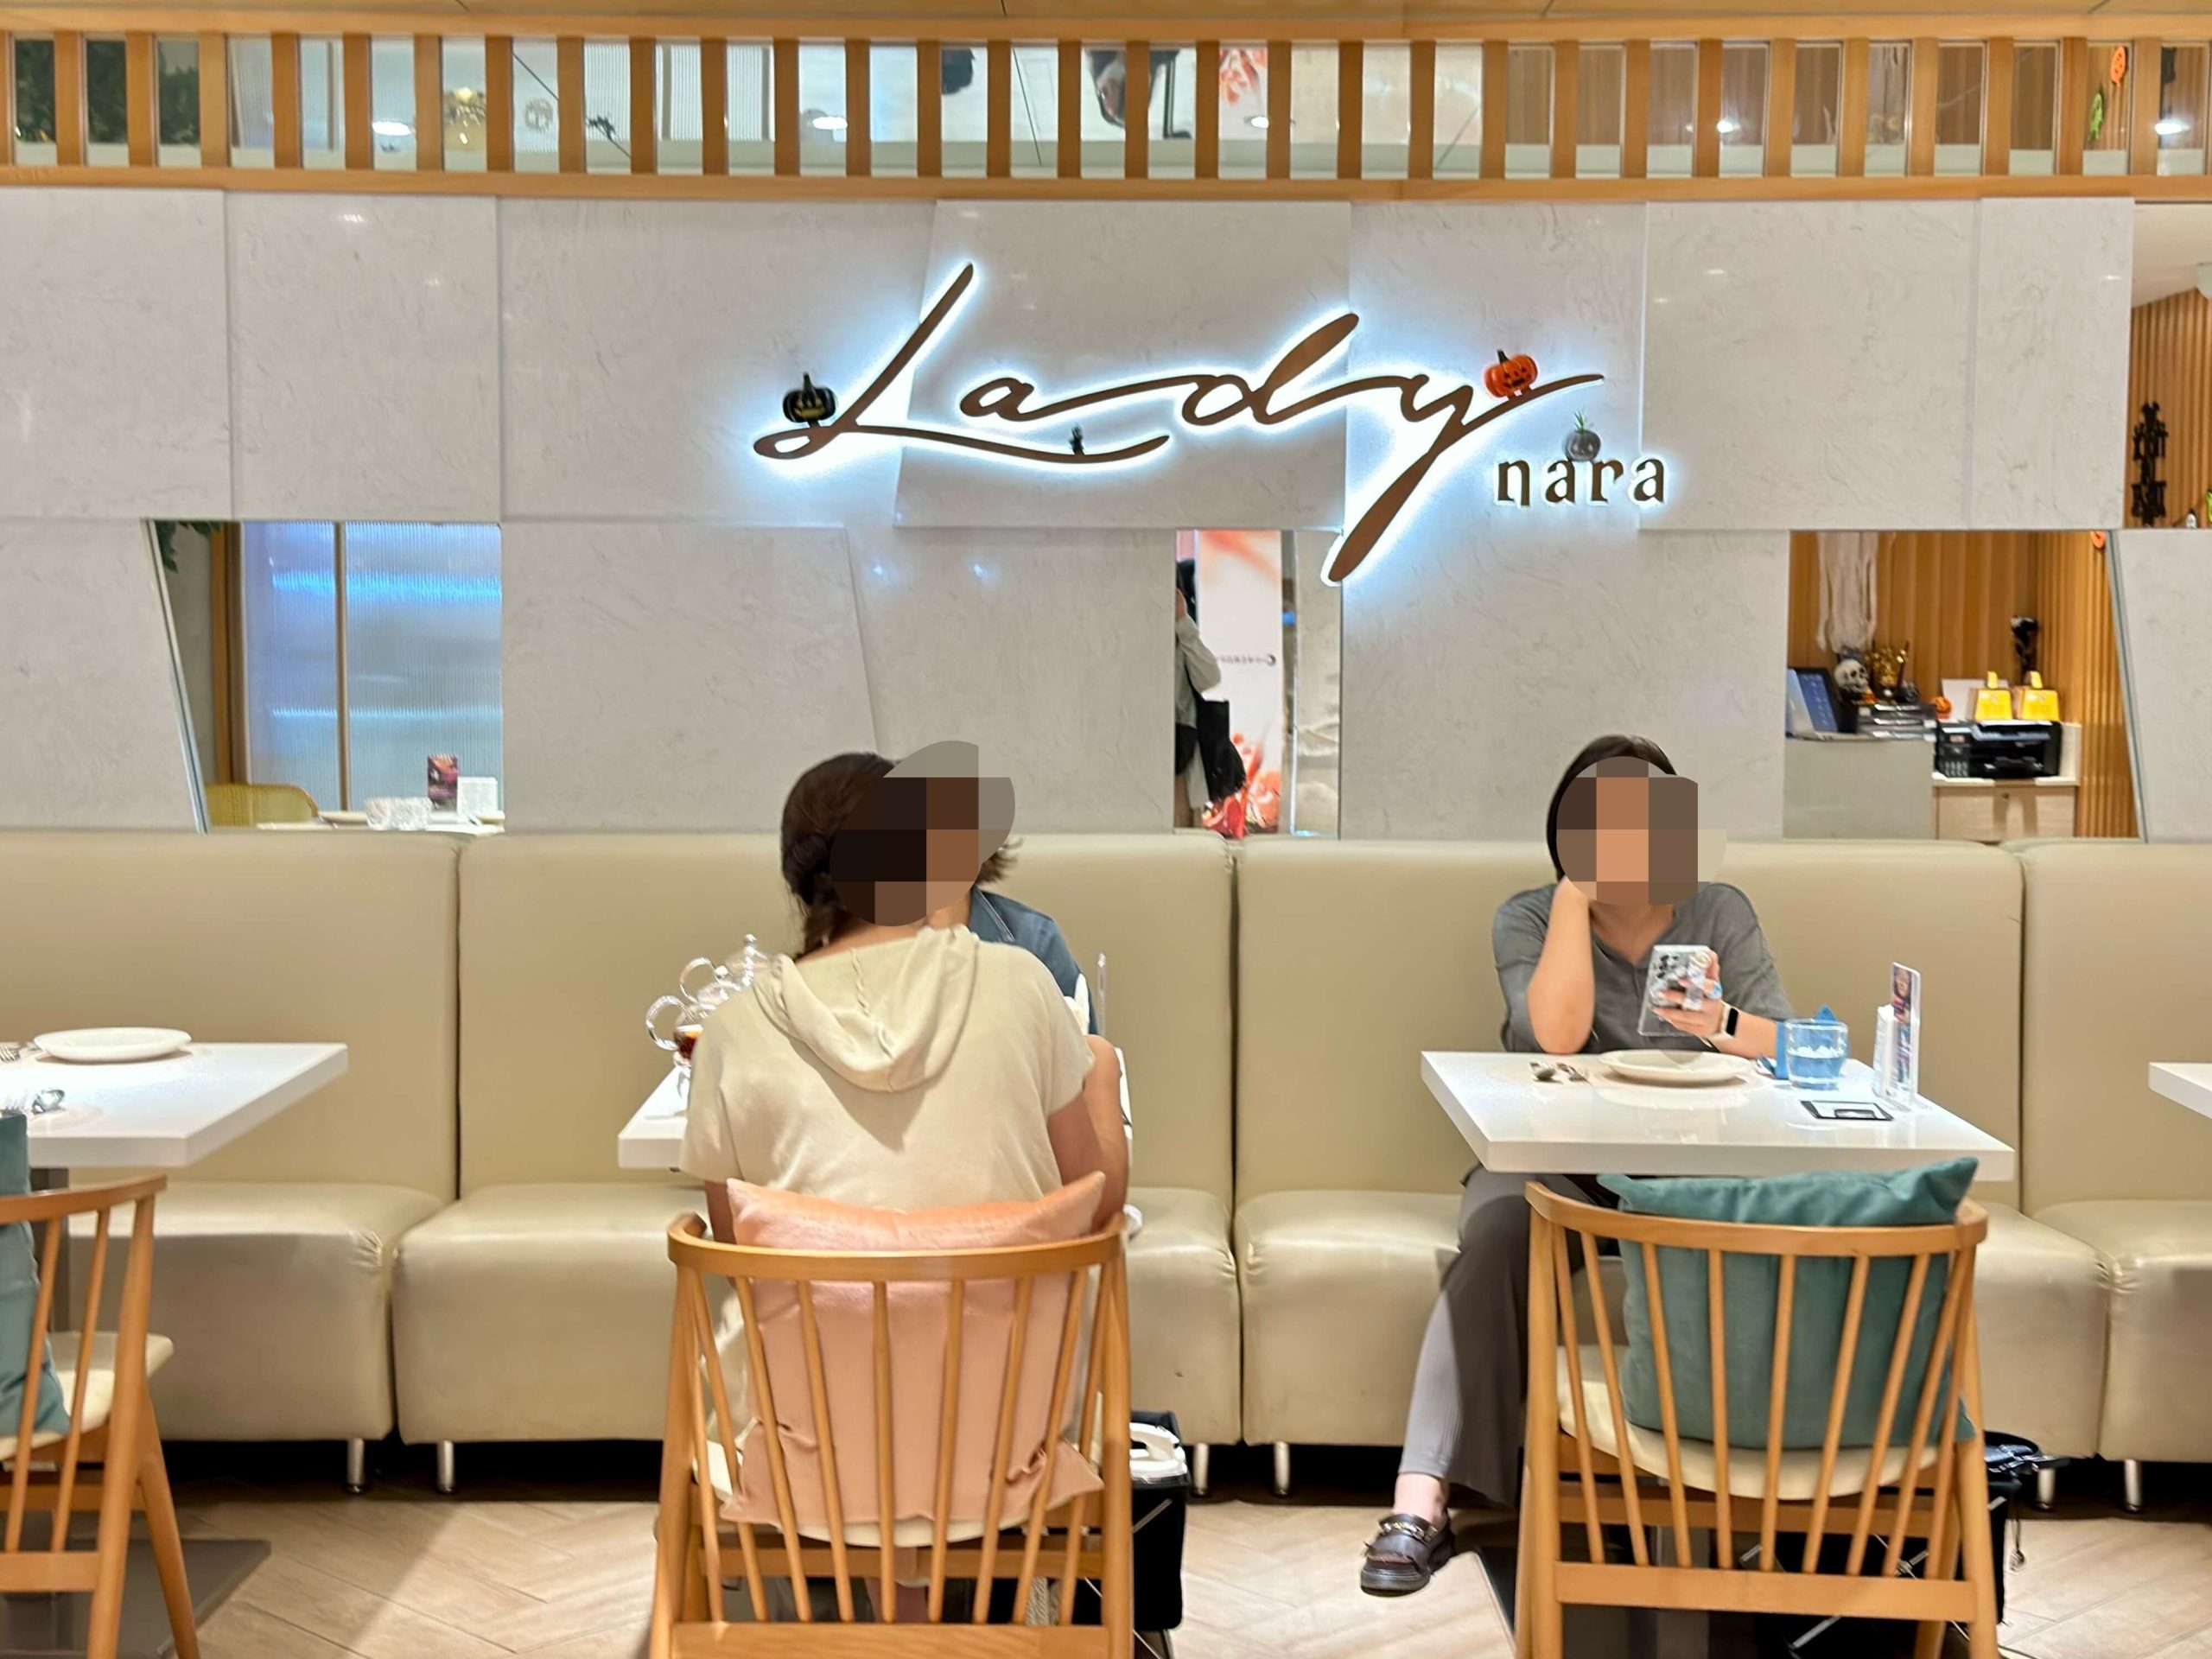 Lady nara曼谷新泰式料理